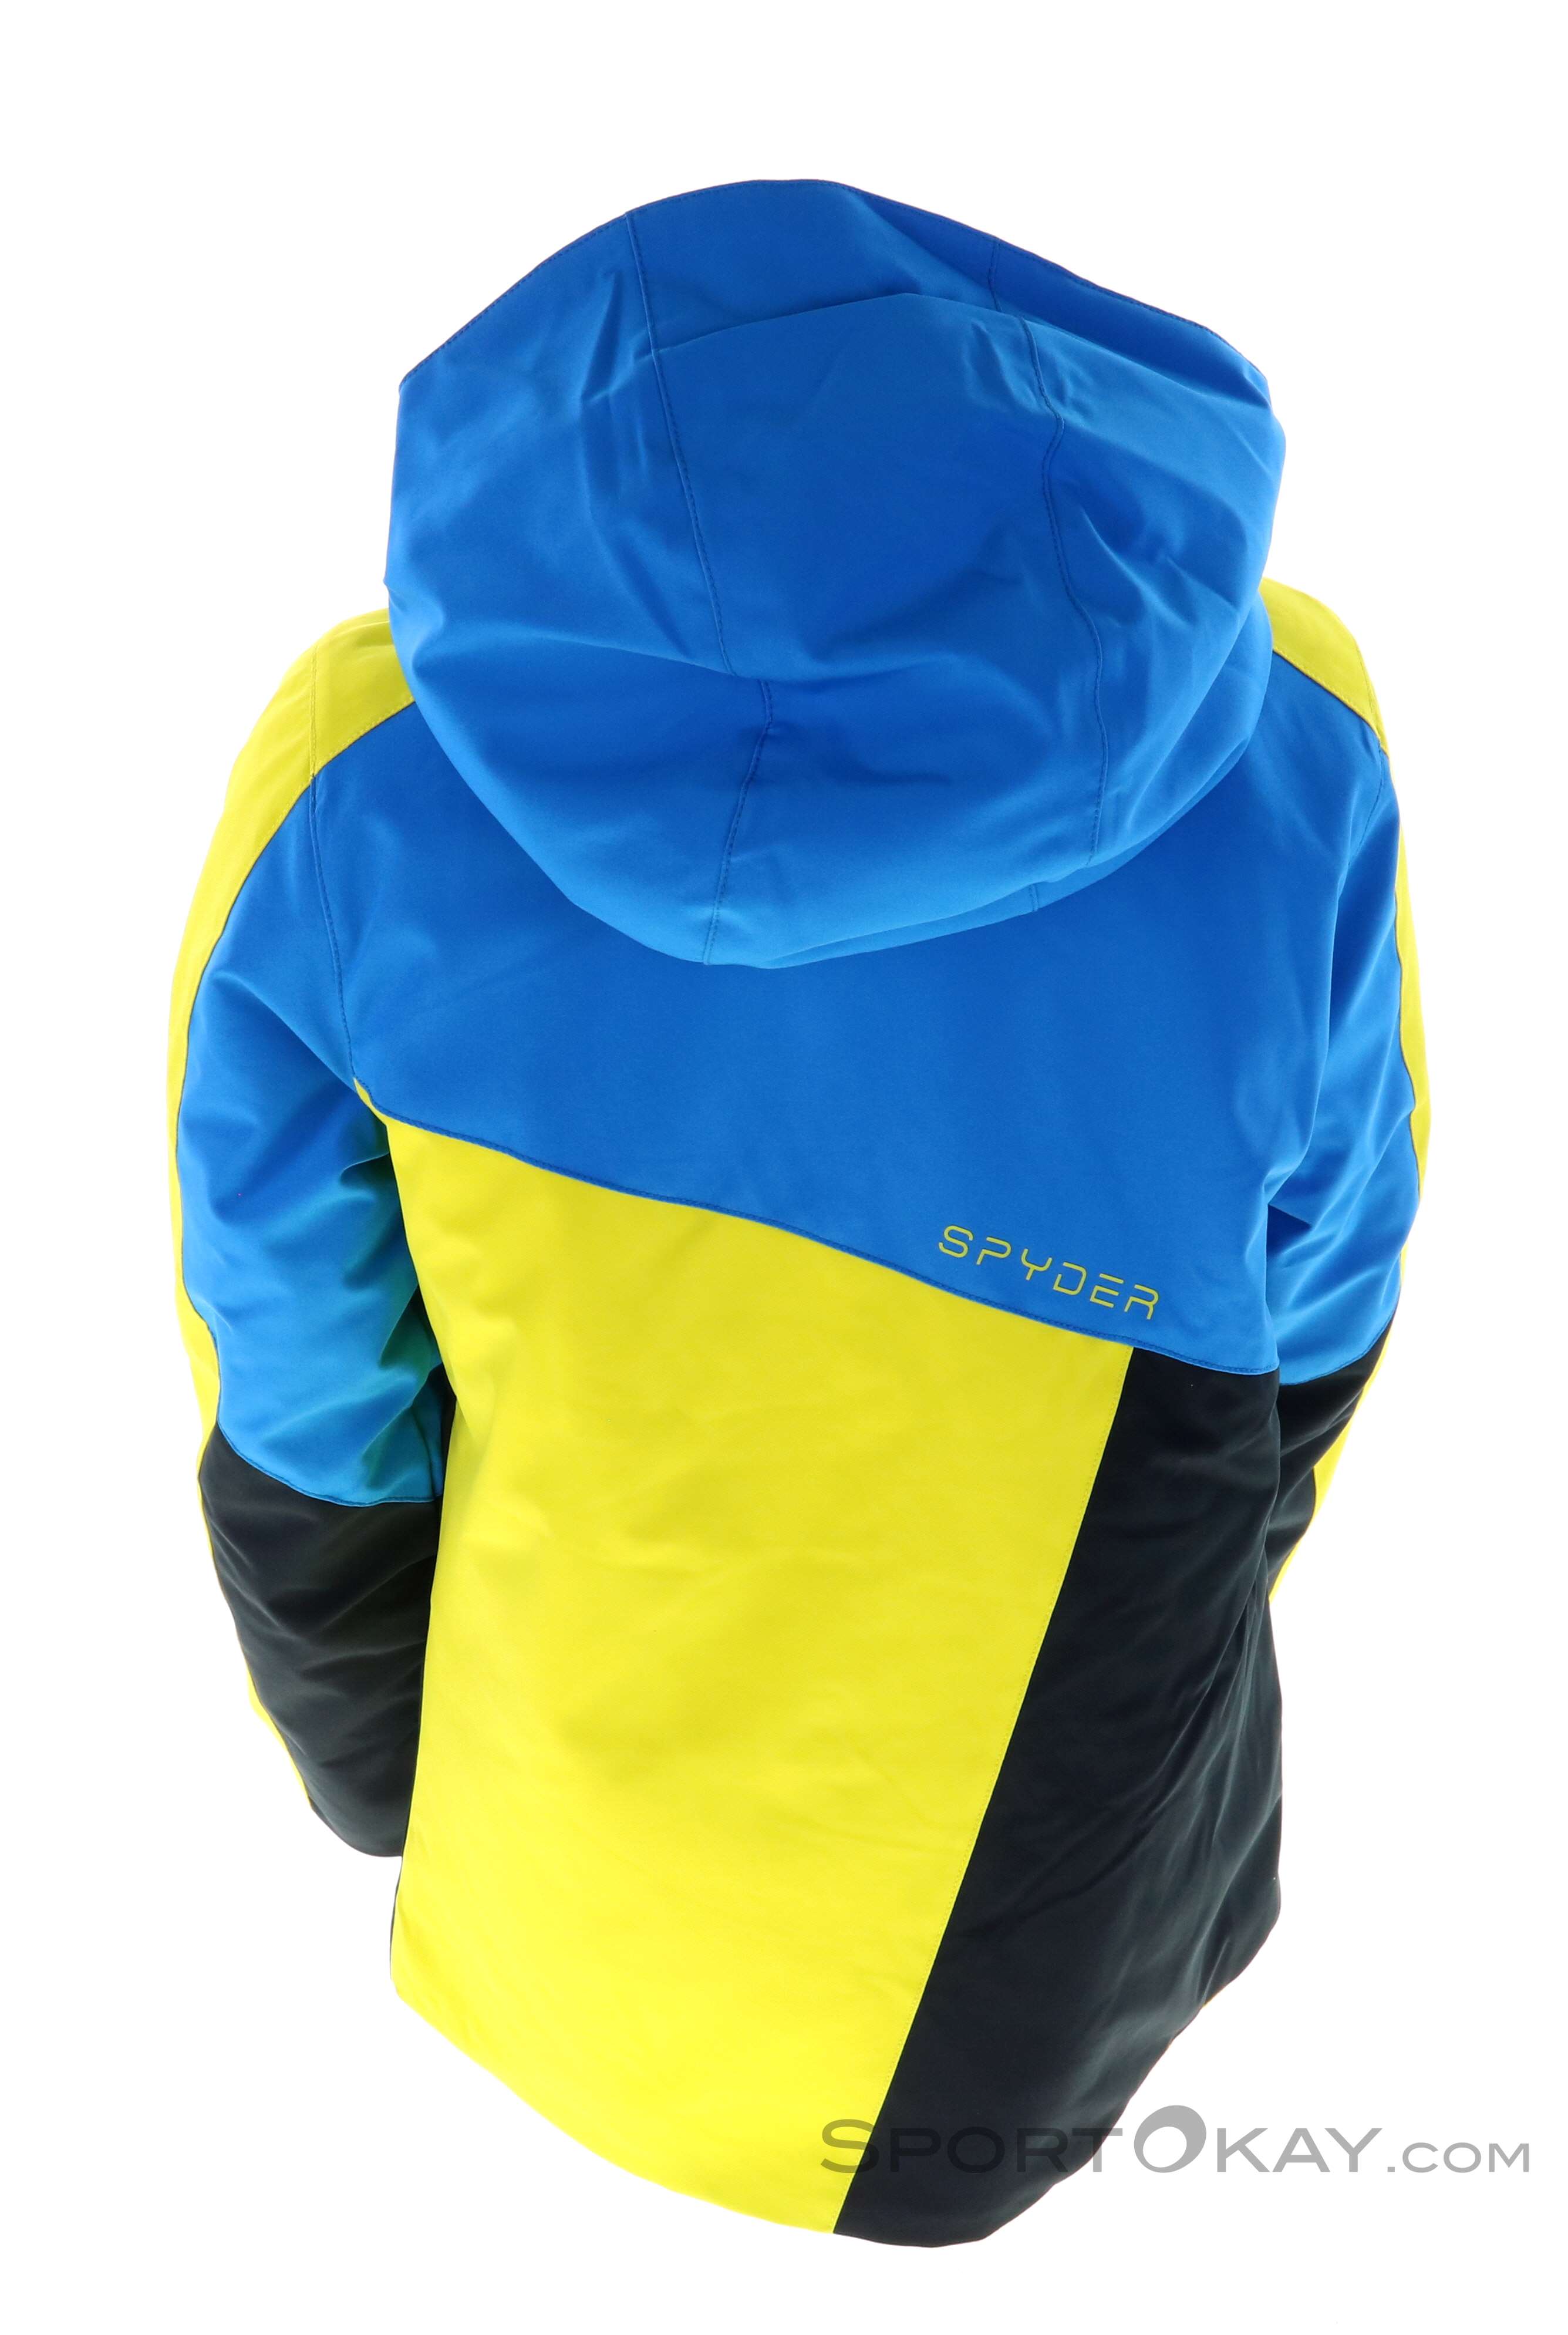 Spyder Ambush Kids Ski Jacket - Ski Jackets - Ski Clothing - Ski